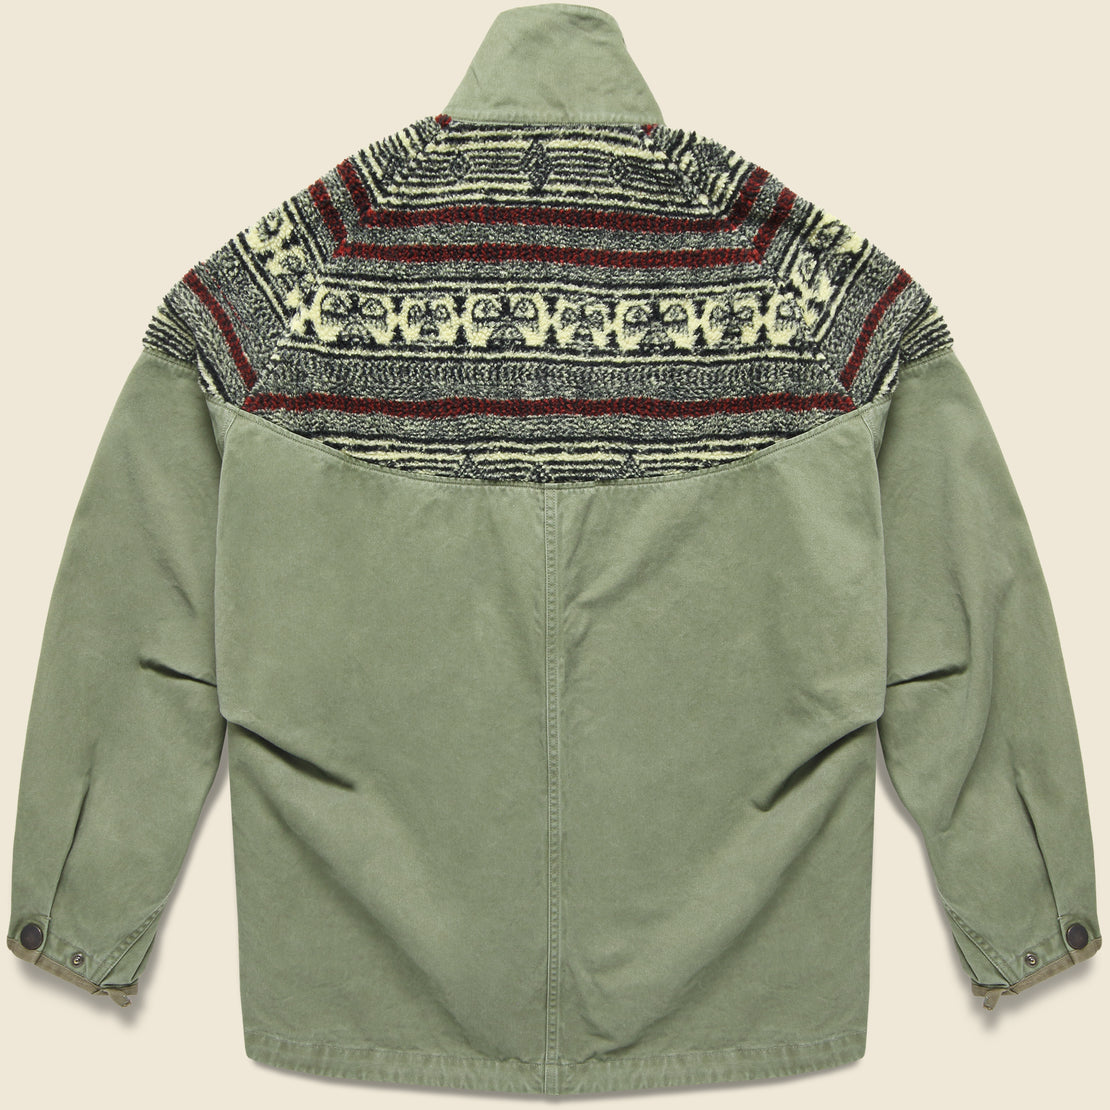 Chino x BIRDS-EYE Fleece NORDIC Anorak - Khaki - Kapital - STAG Provisions - Outerwear - Coat / Jacket